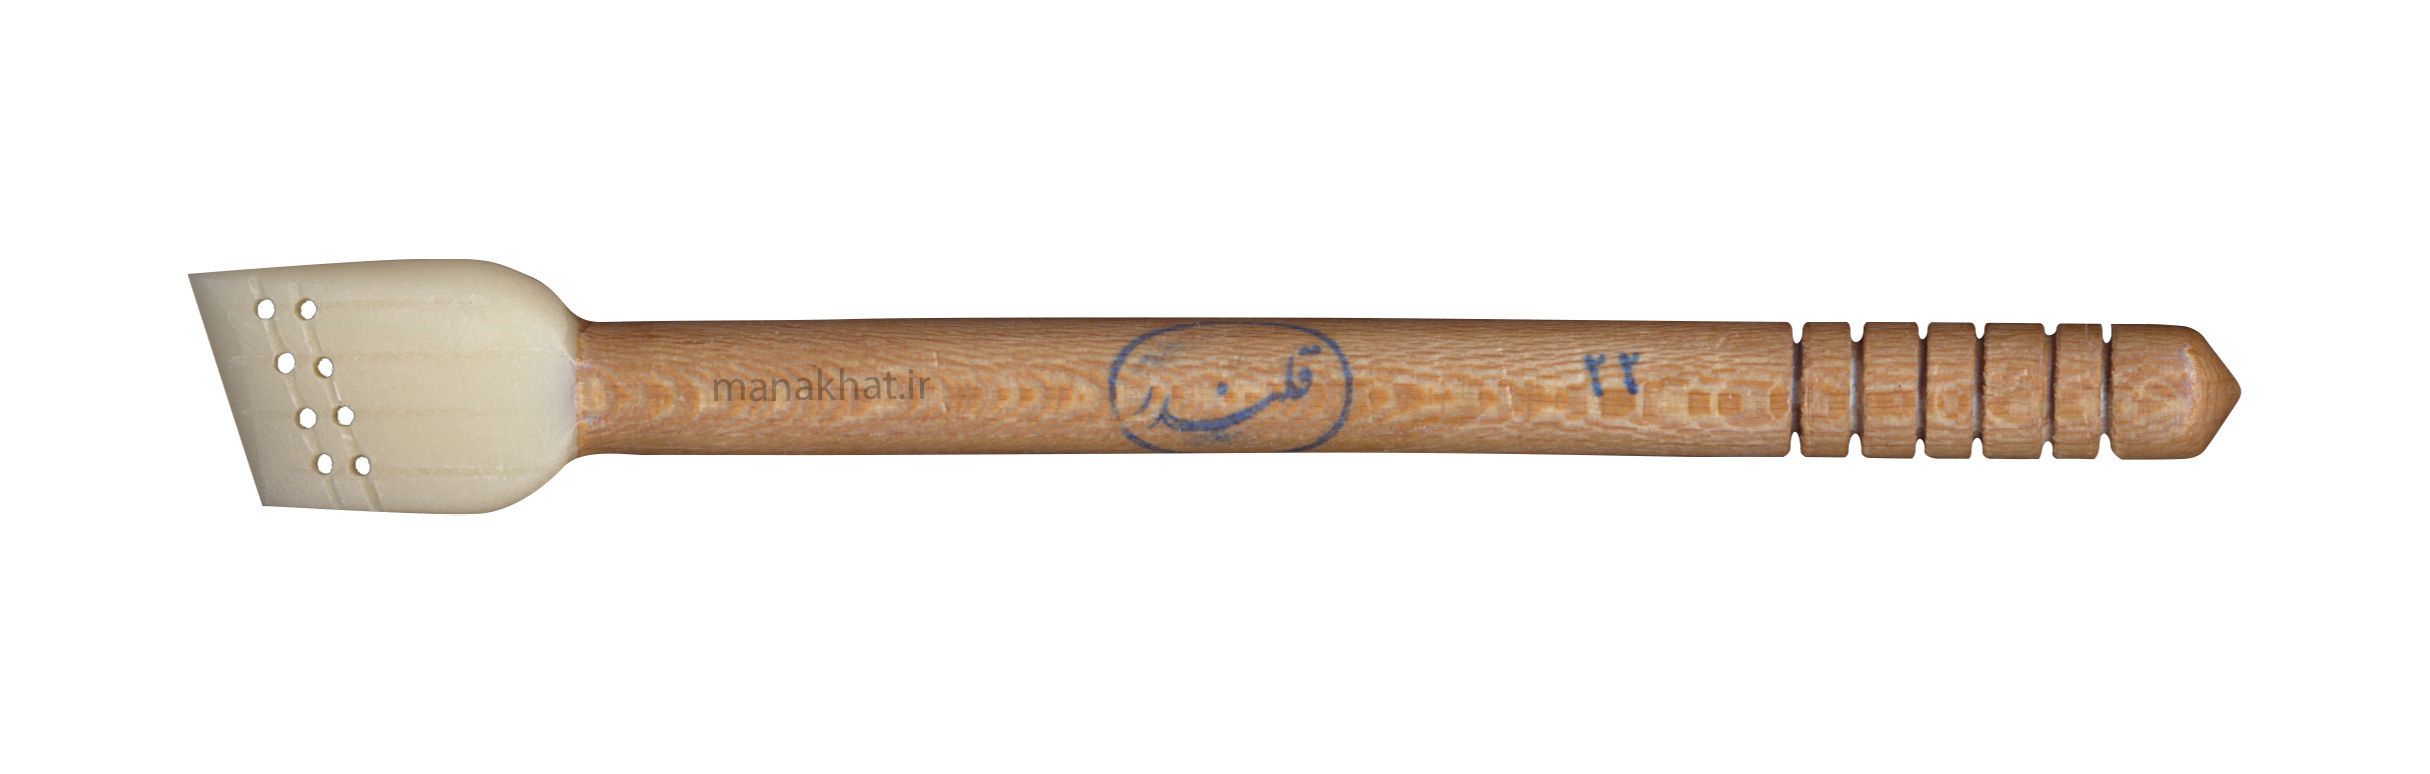 قلم پلیمری قلندر سایز 22 میلی متر